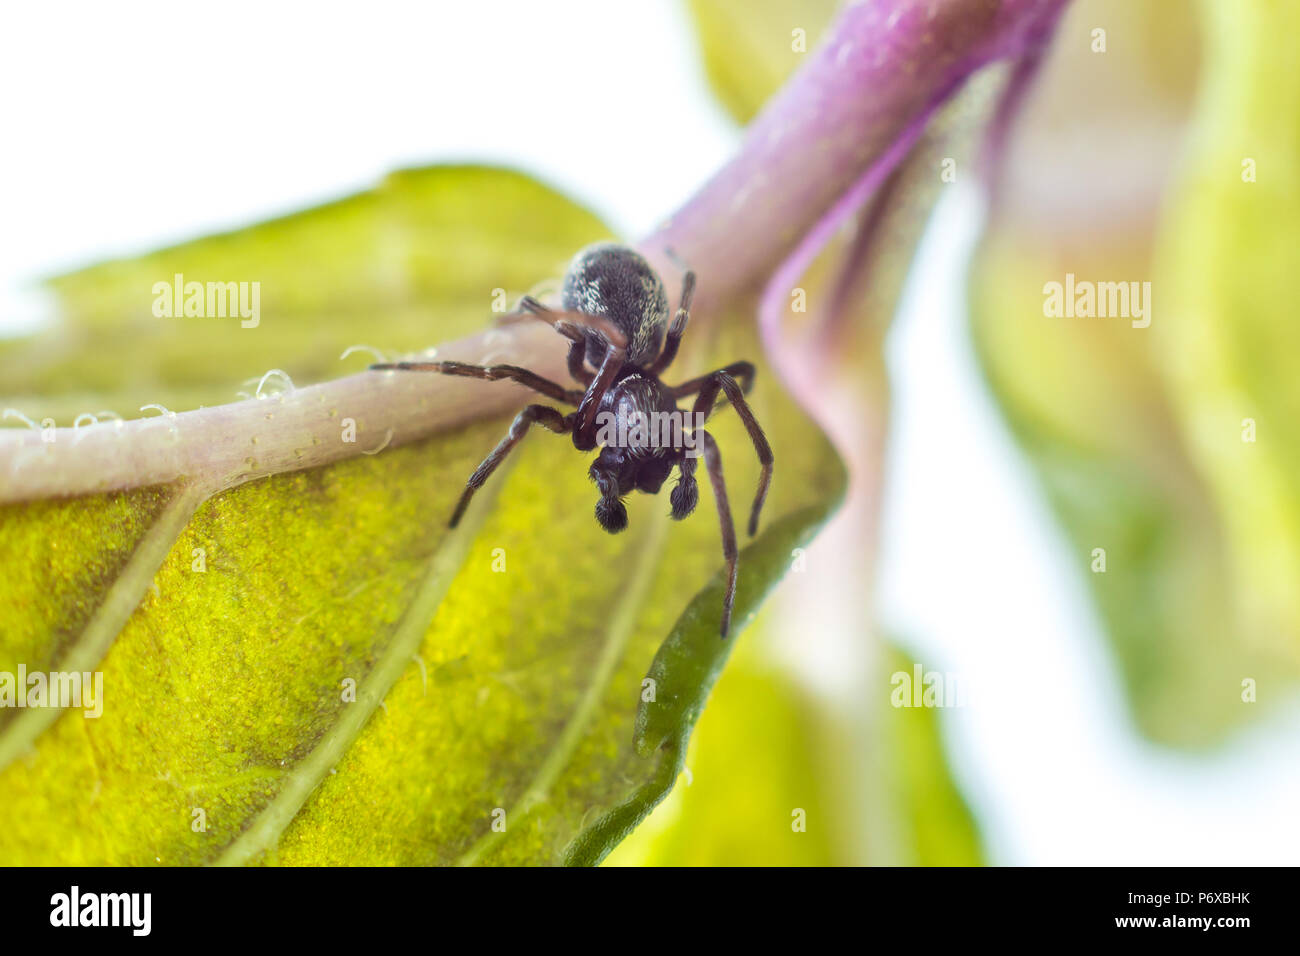 Dictyna latens, eine kleine männliche Spinne auf einem Blatt in einem Studio, Isles of Scilly, Juli Stockfoto